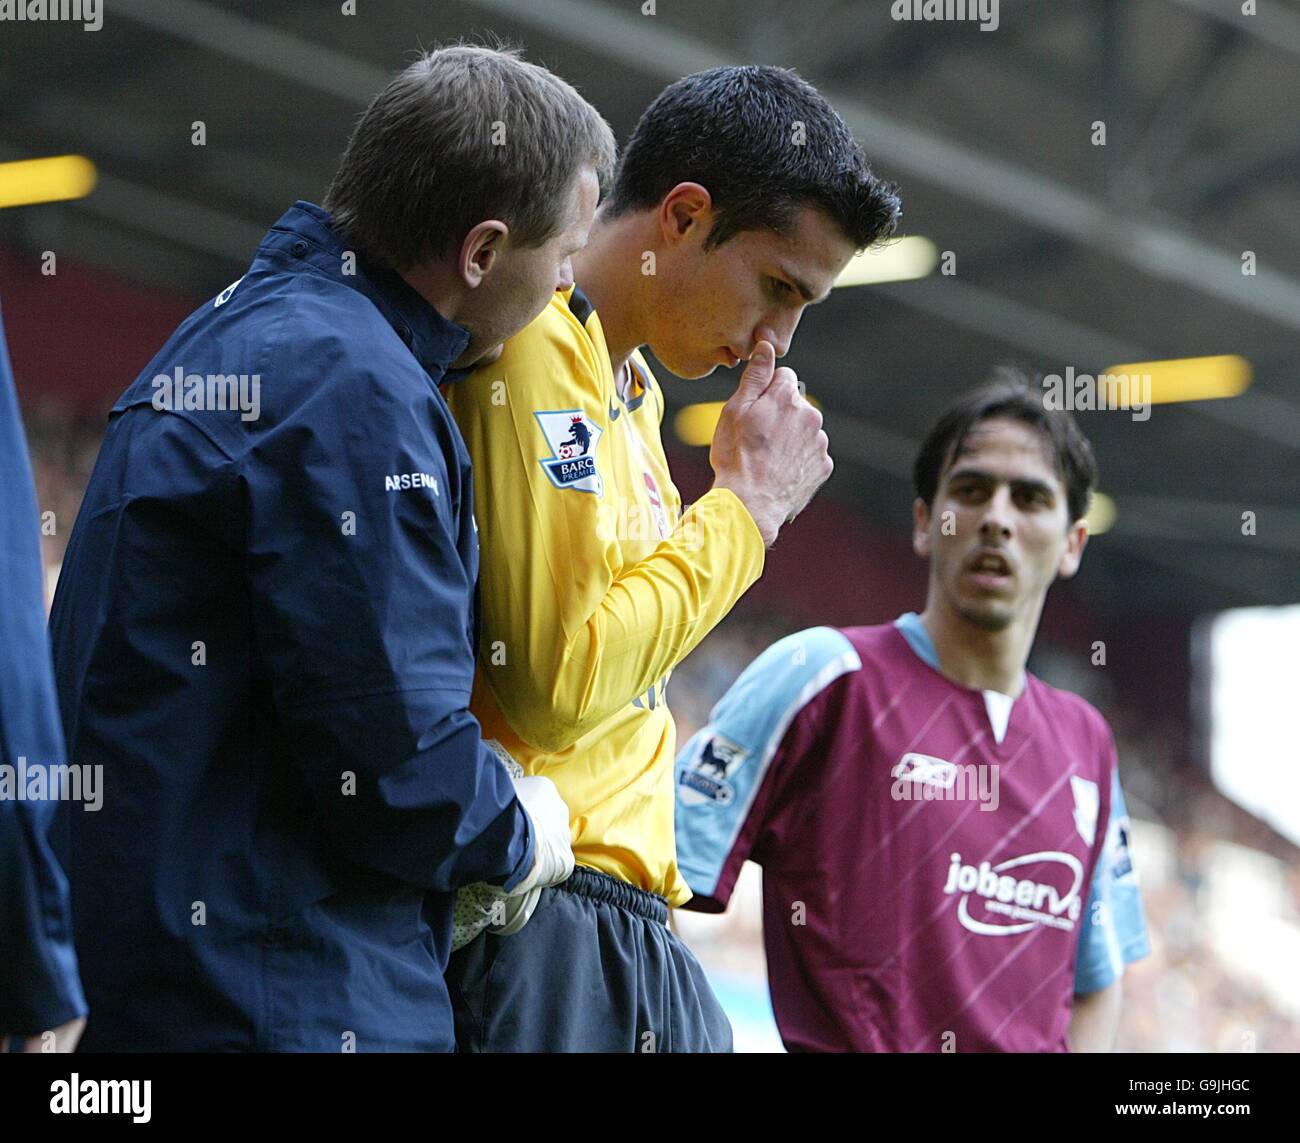 Fußball - FA Barclays Premiership - West Ham United / Arsenal - Upton Park. Robin Van Persie von Arsenal steht verletzt, nachdem sie von einem Objekt aus der Menge getroffen wurde Stockfoto